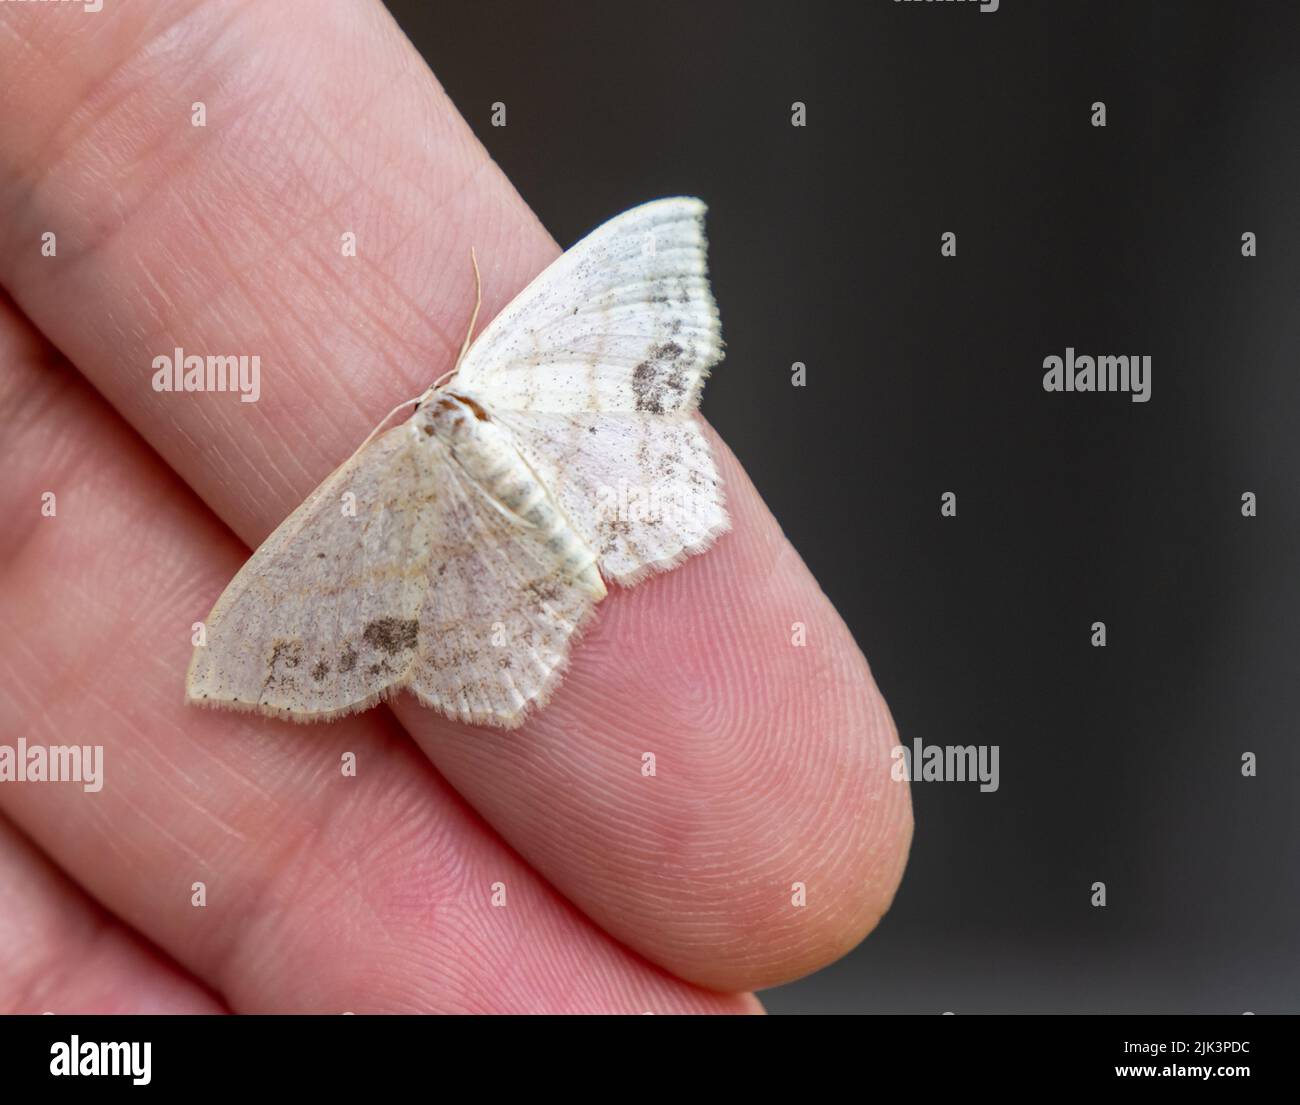 Nahaufnahme einer winzigen weißen Motte, die auf einer menschlichen Hand mit verschwommenem Hintergrund liegt Stockfoto